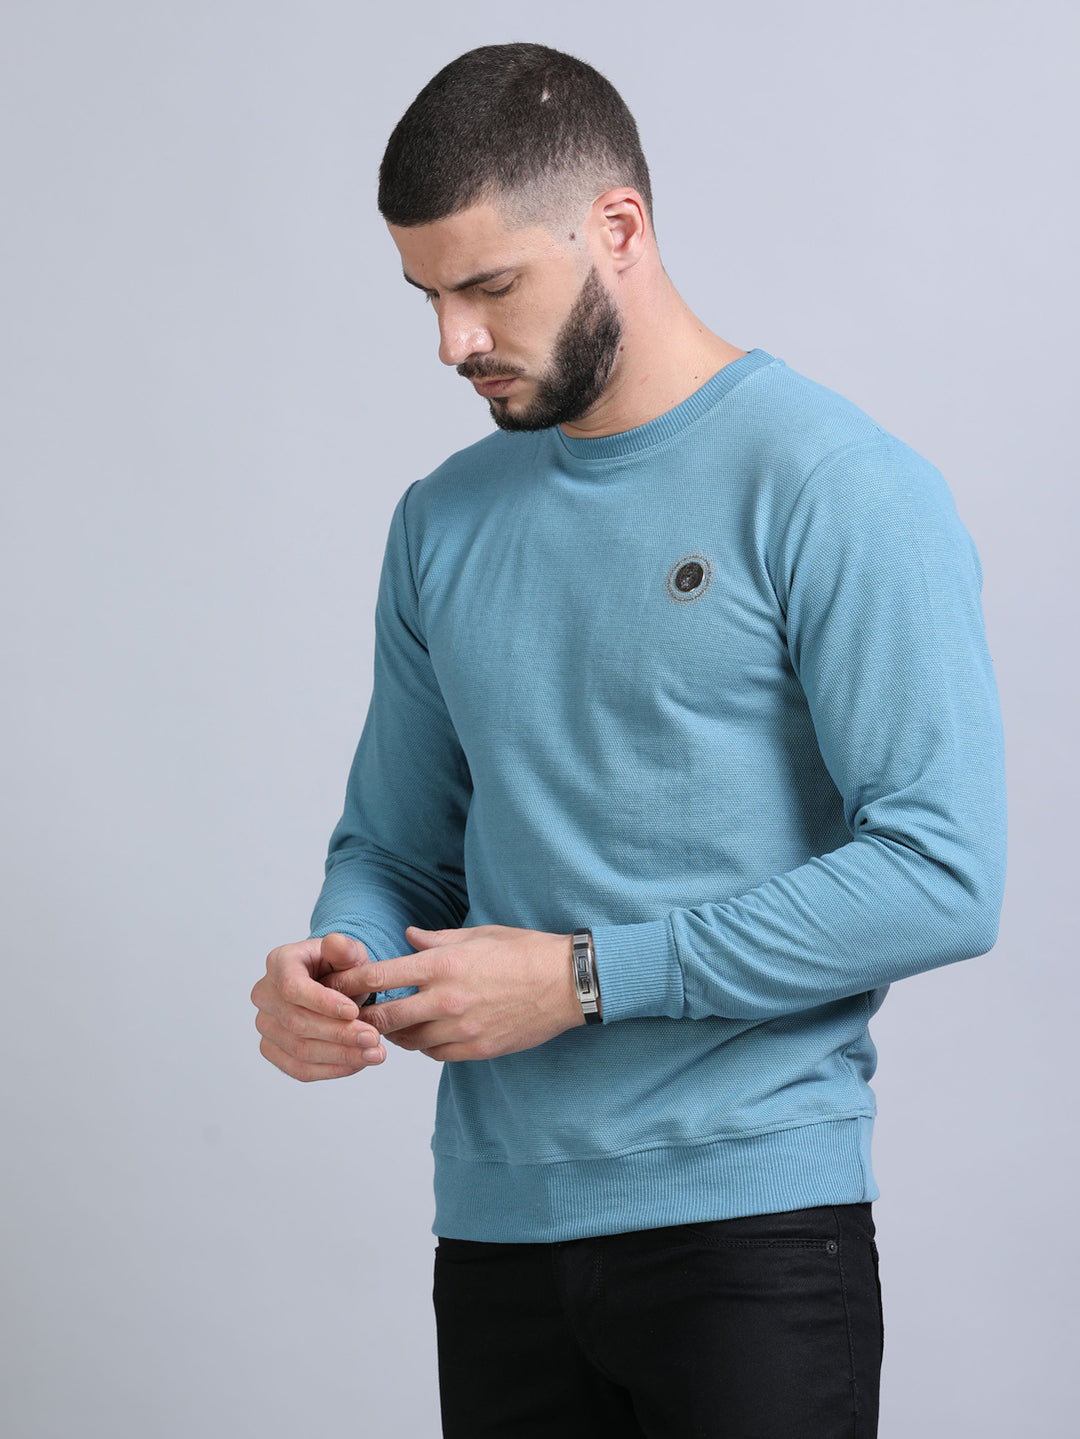 Acrylic Turkish Blue Solid Sweatshirt Sweatshirt Bushirt   